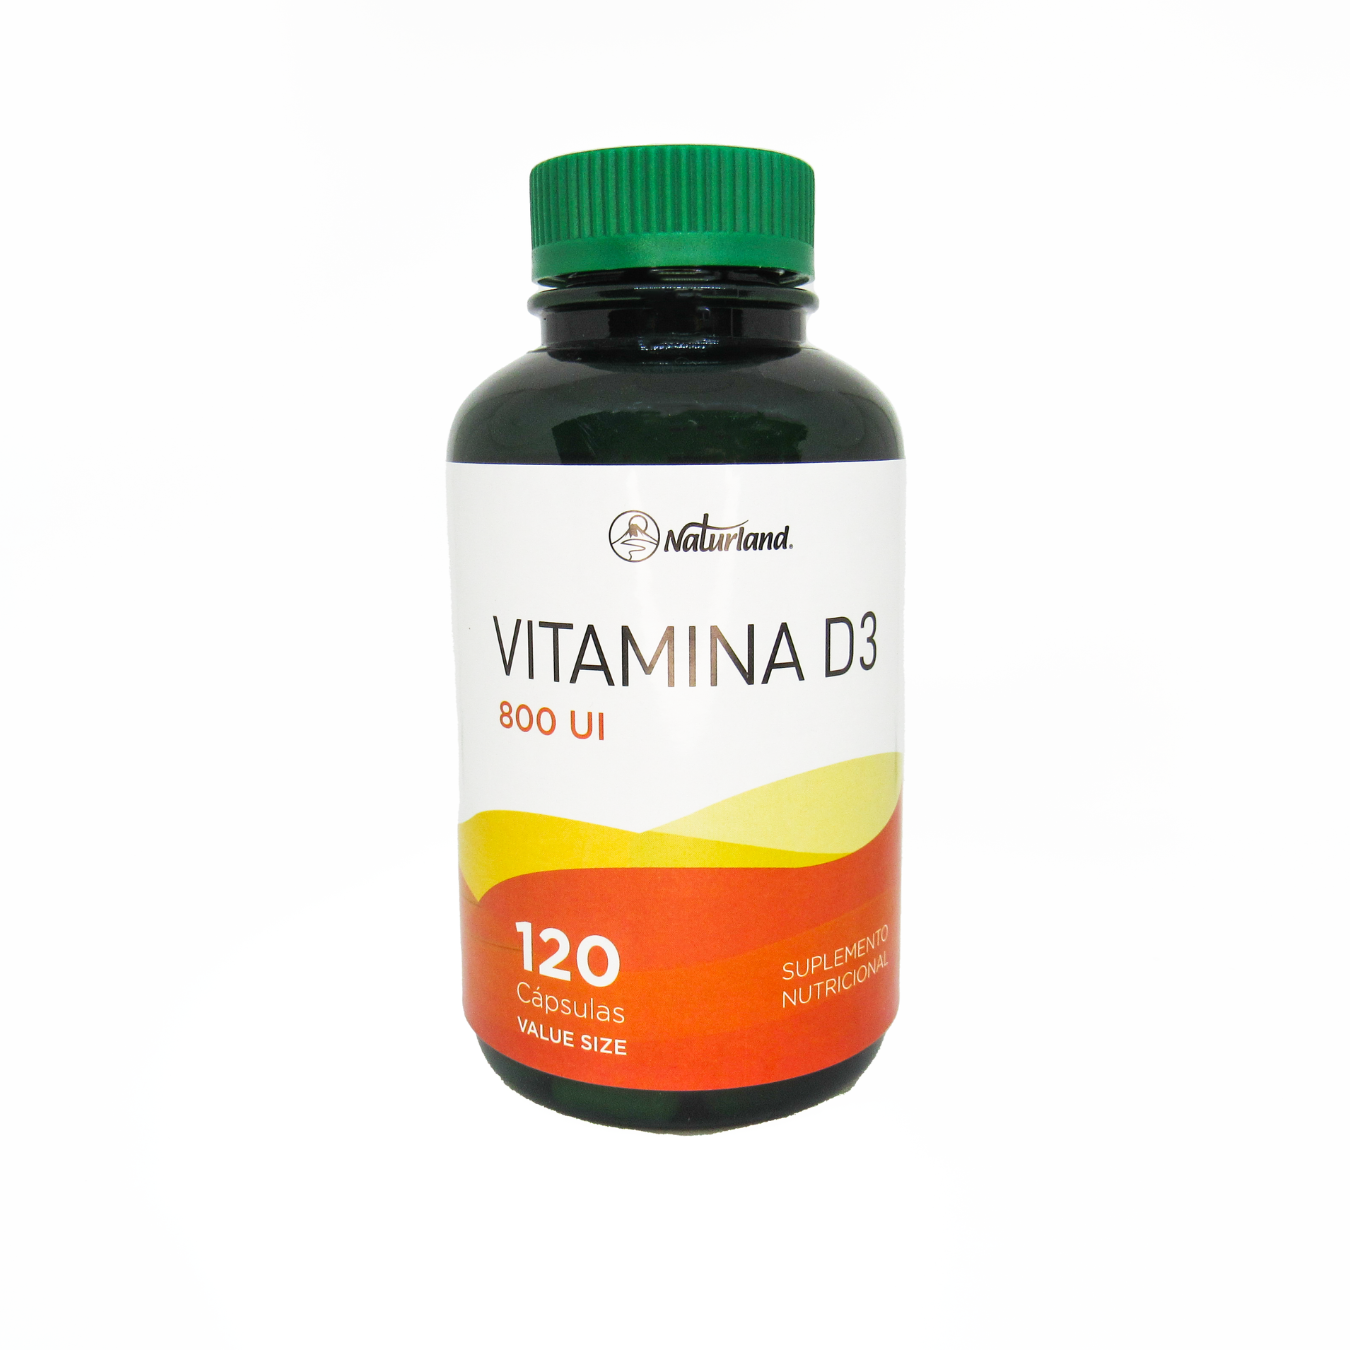 Vitamina D3 800 UI x 120 Caps.